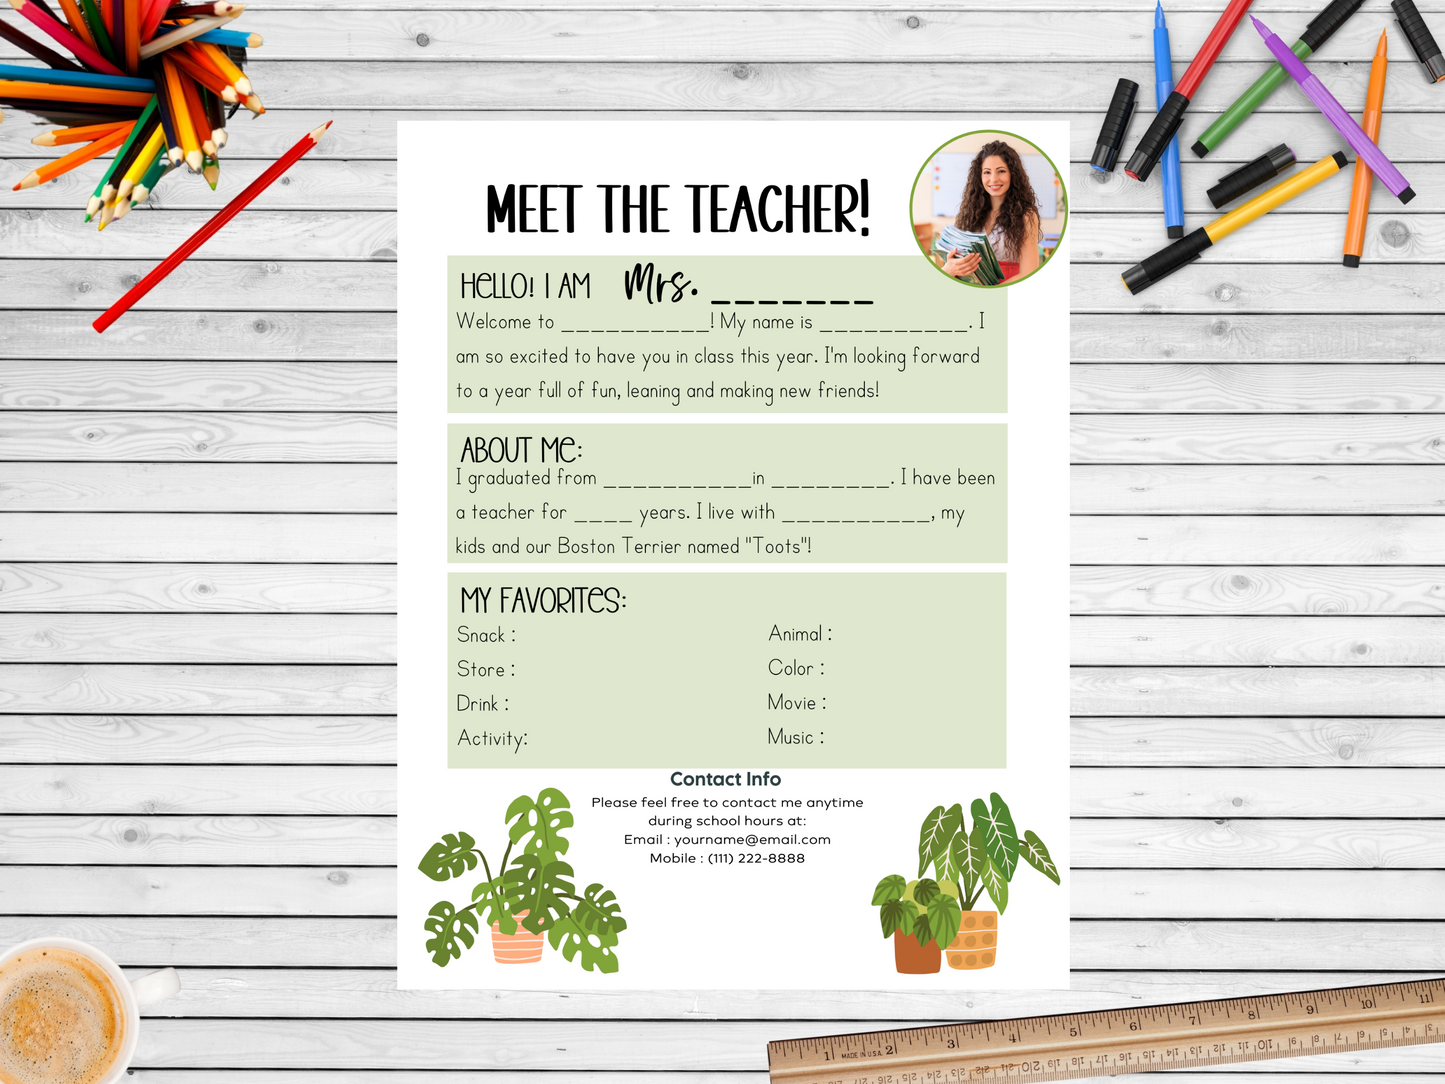 Meet the Teacher Letter Template - Plants